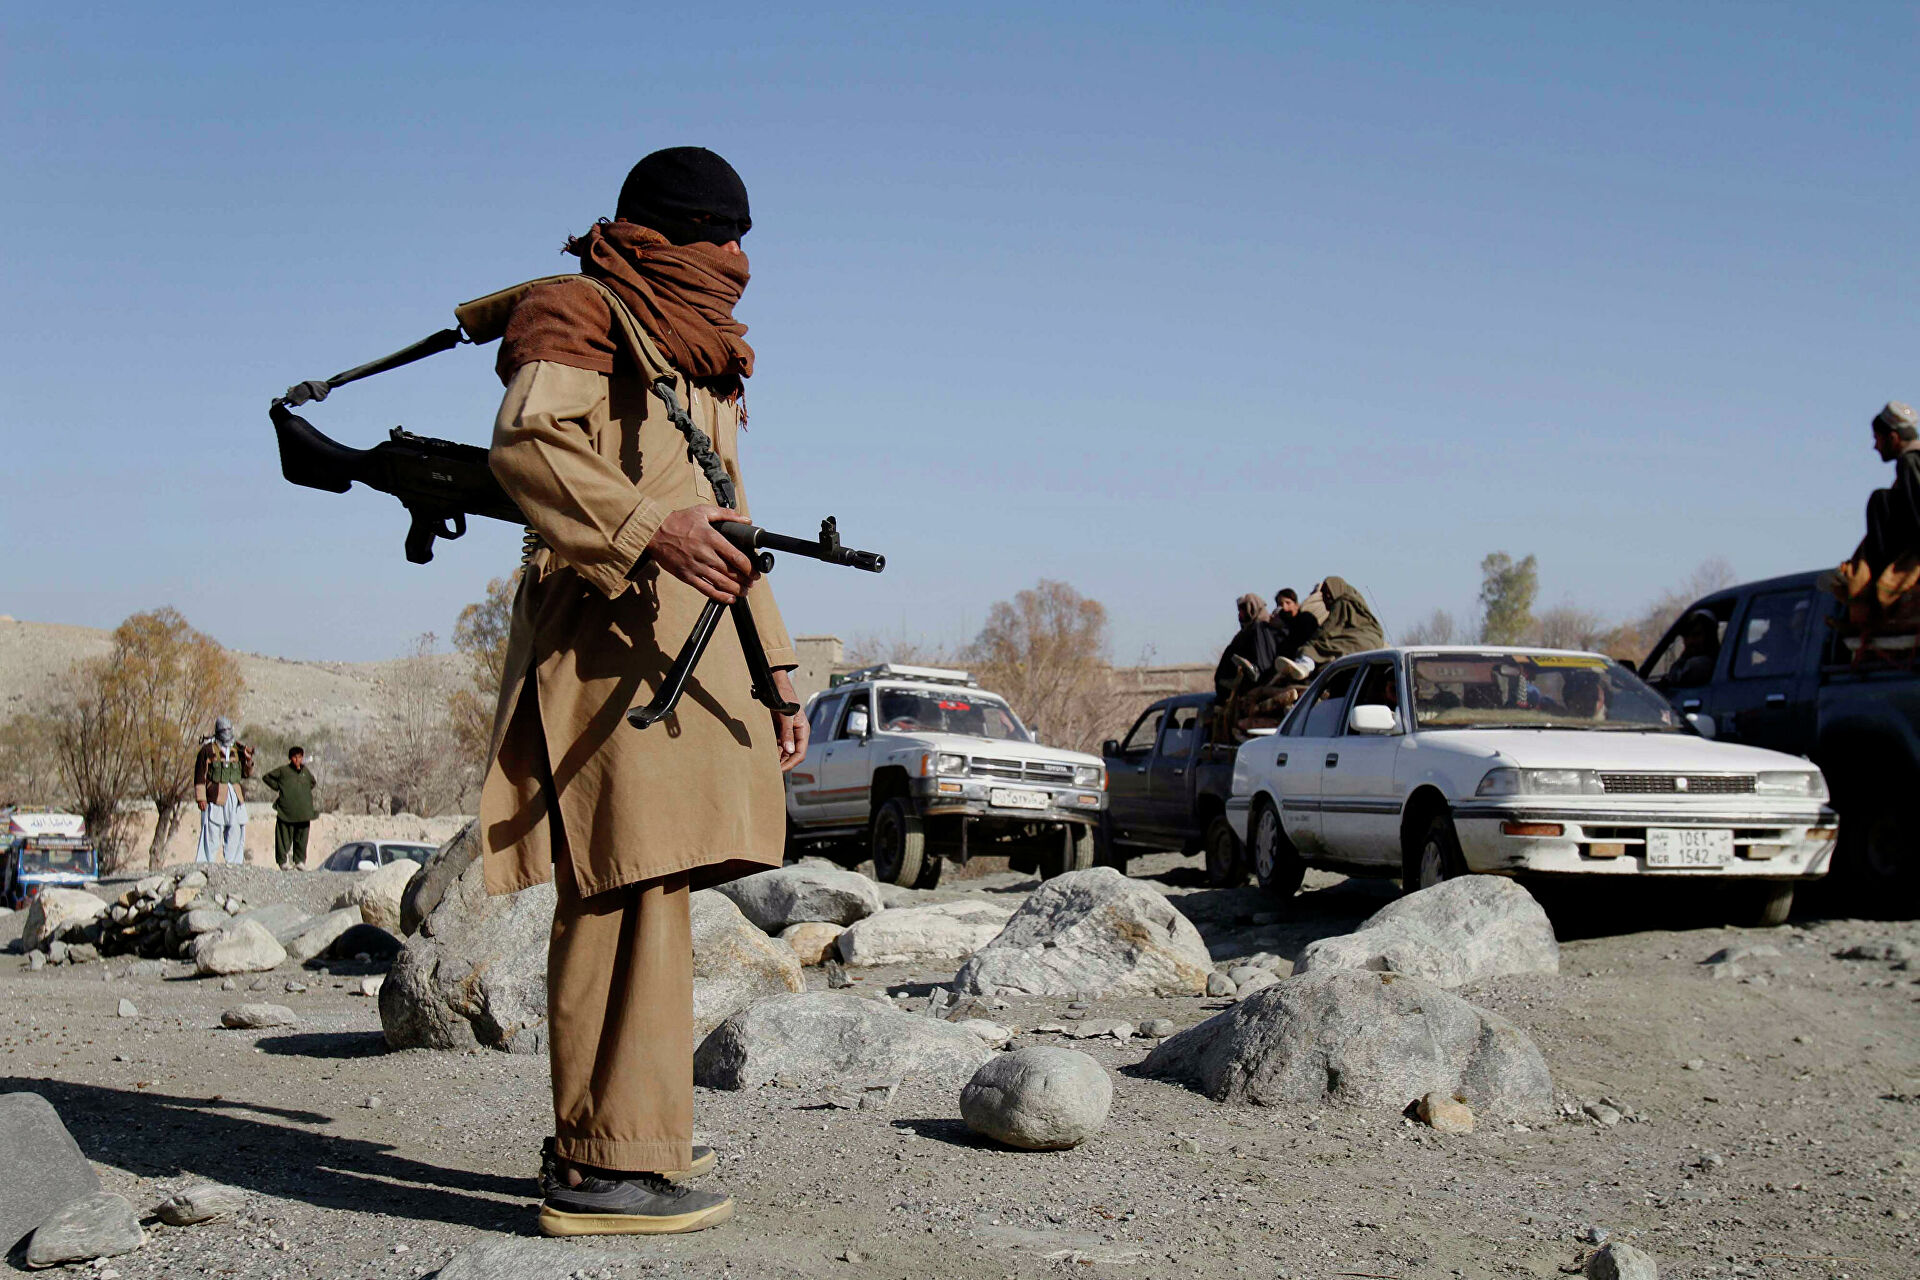 Талибы ведут переговоры с правительством Афганистана о возможности войти в Кабул мирно 